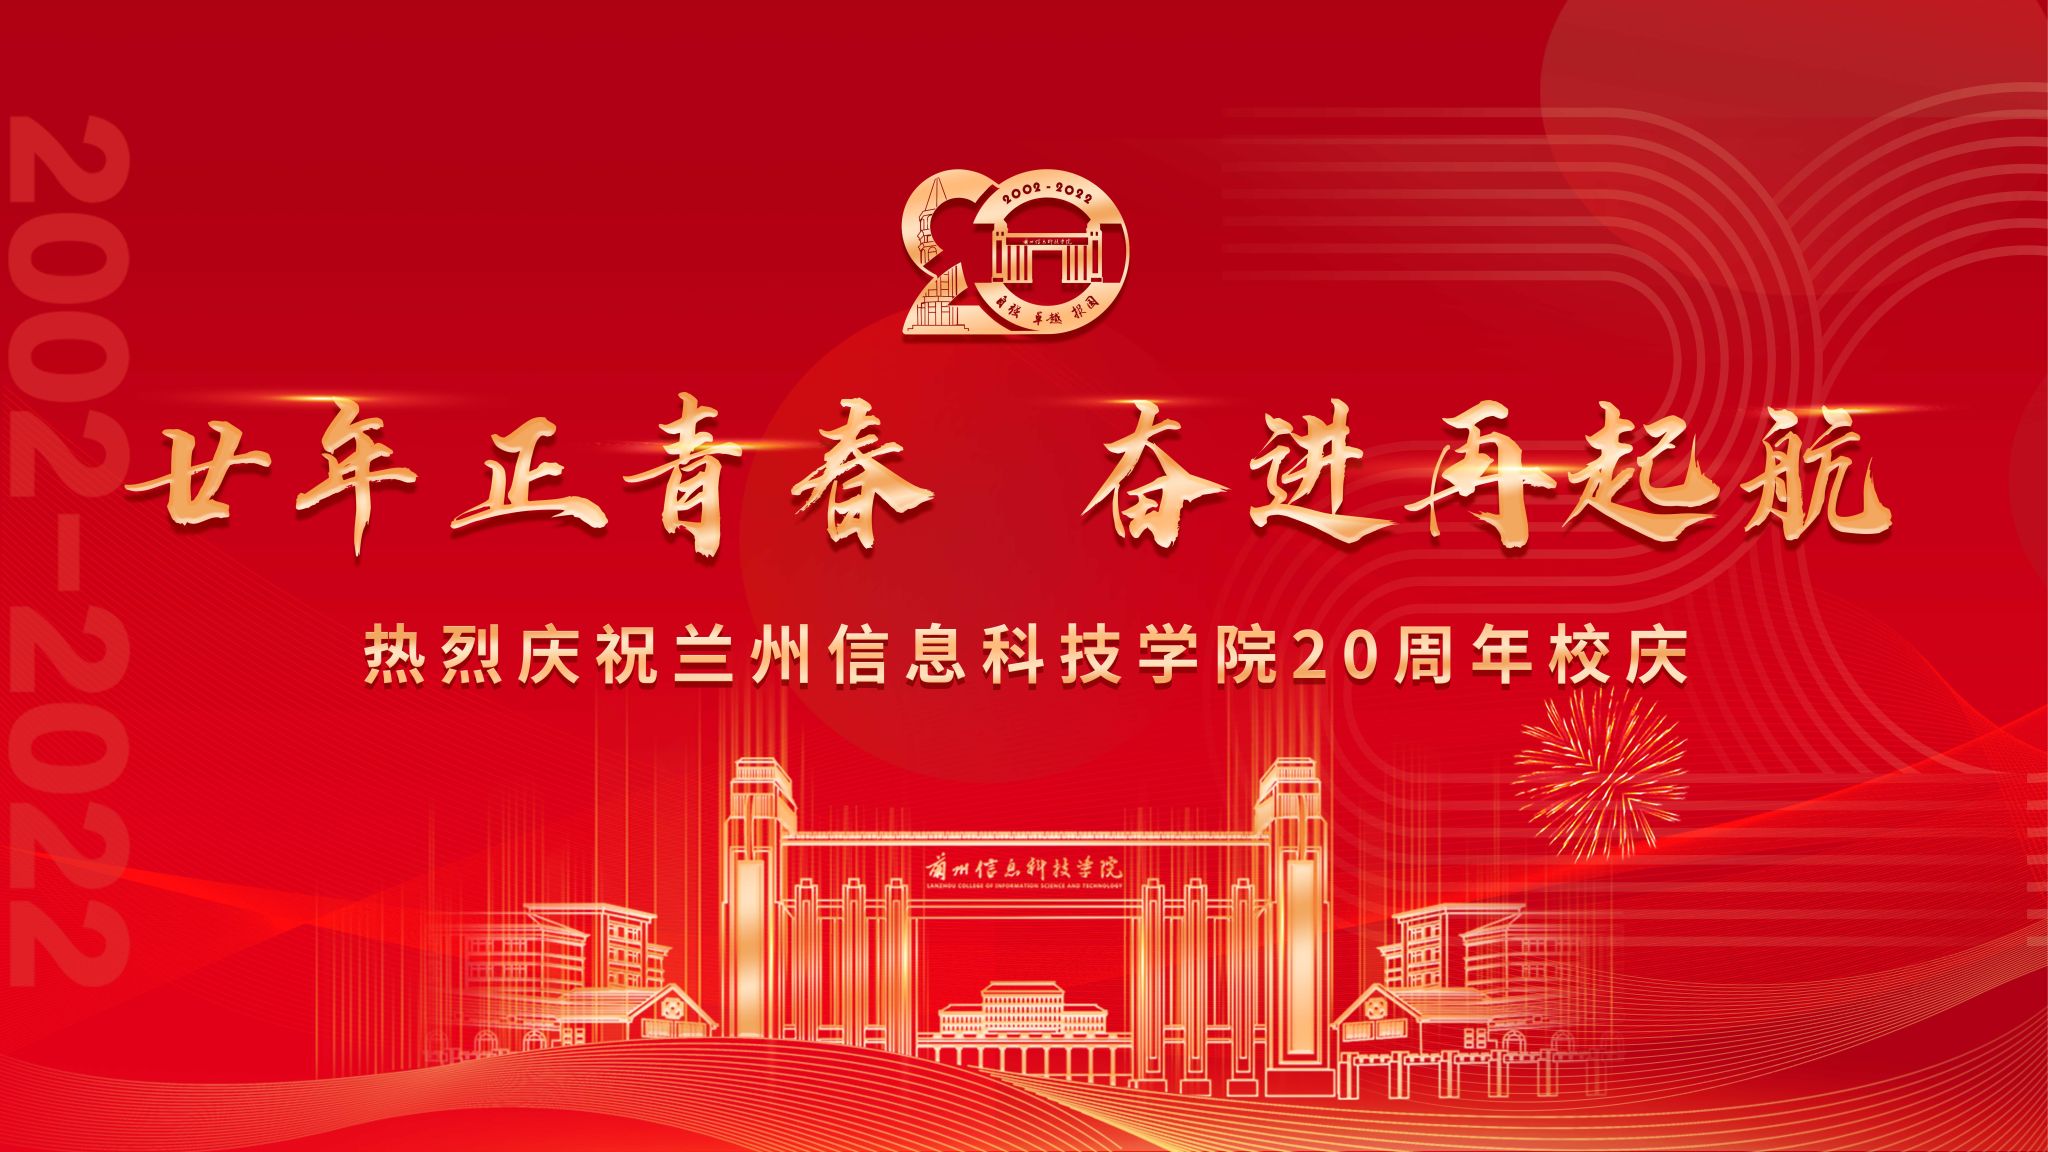 【中国新闻网】兰州信息科技学院迎20周年庆：培养4万余名应用型人才